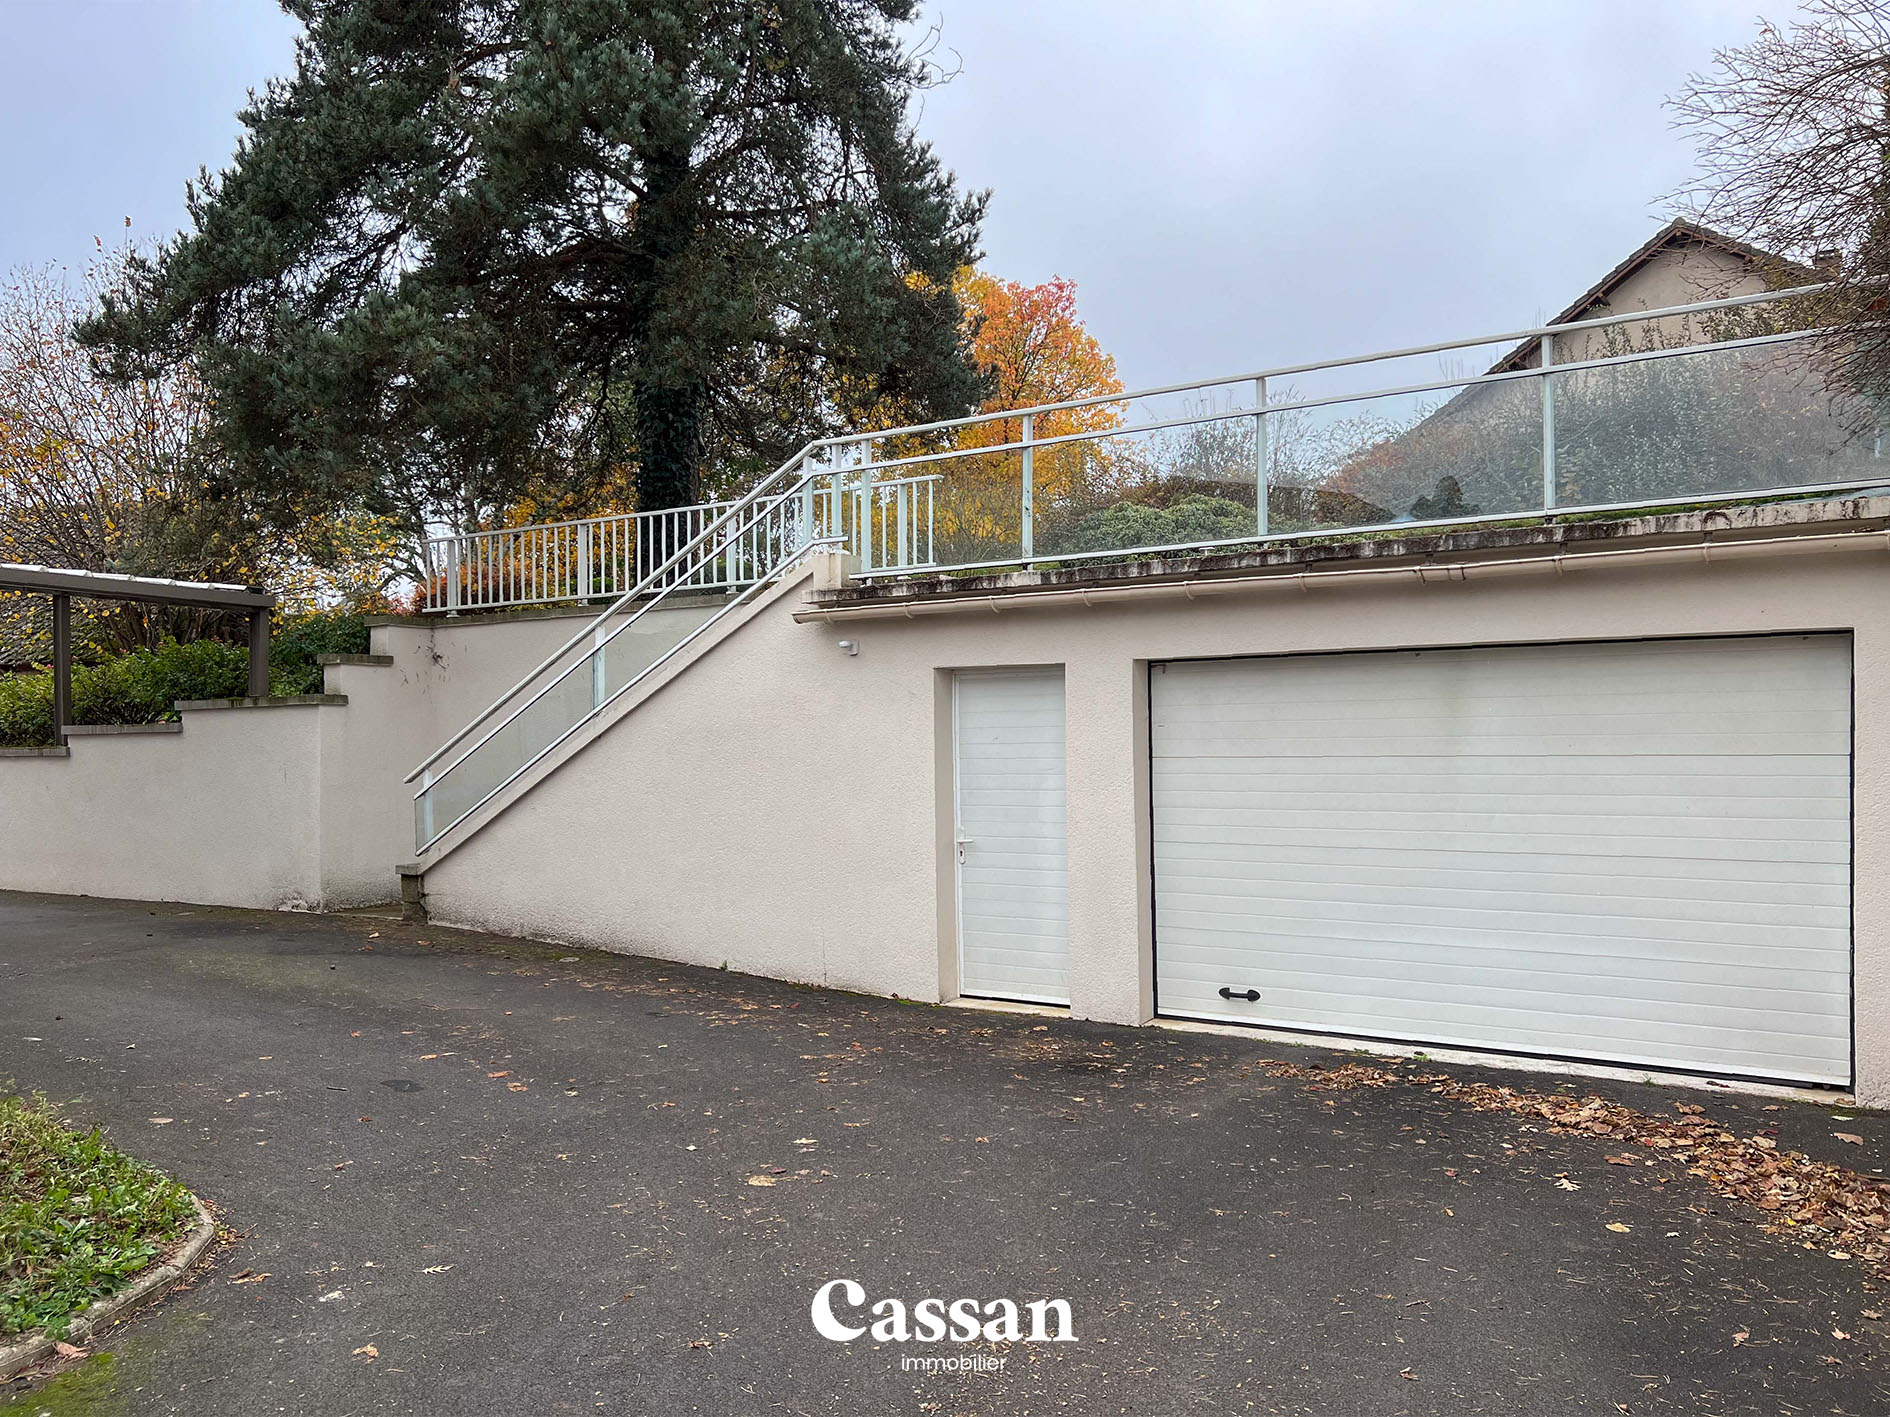 Garage maison à vendre Lacapelle del fraisse Cassan immobilier